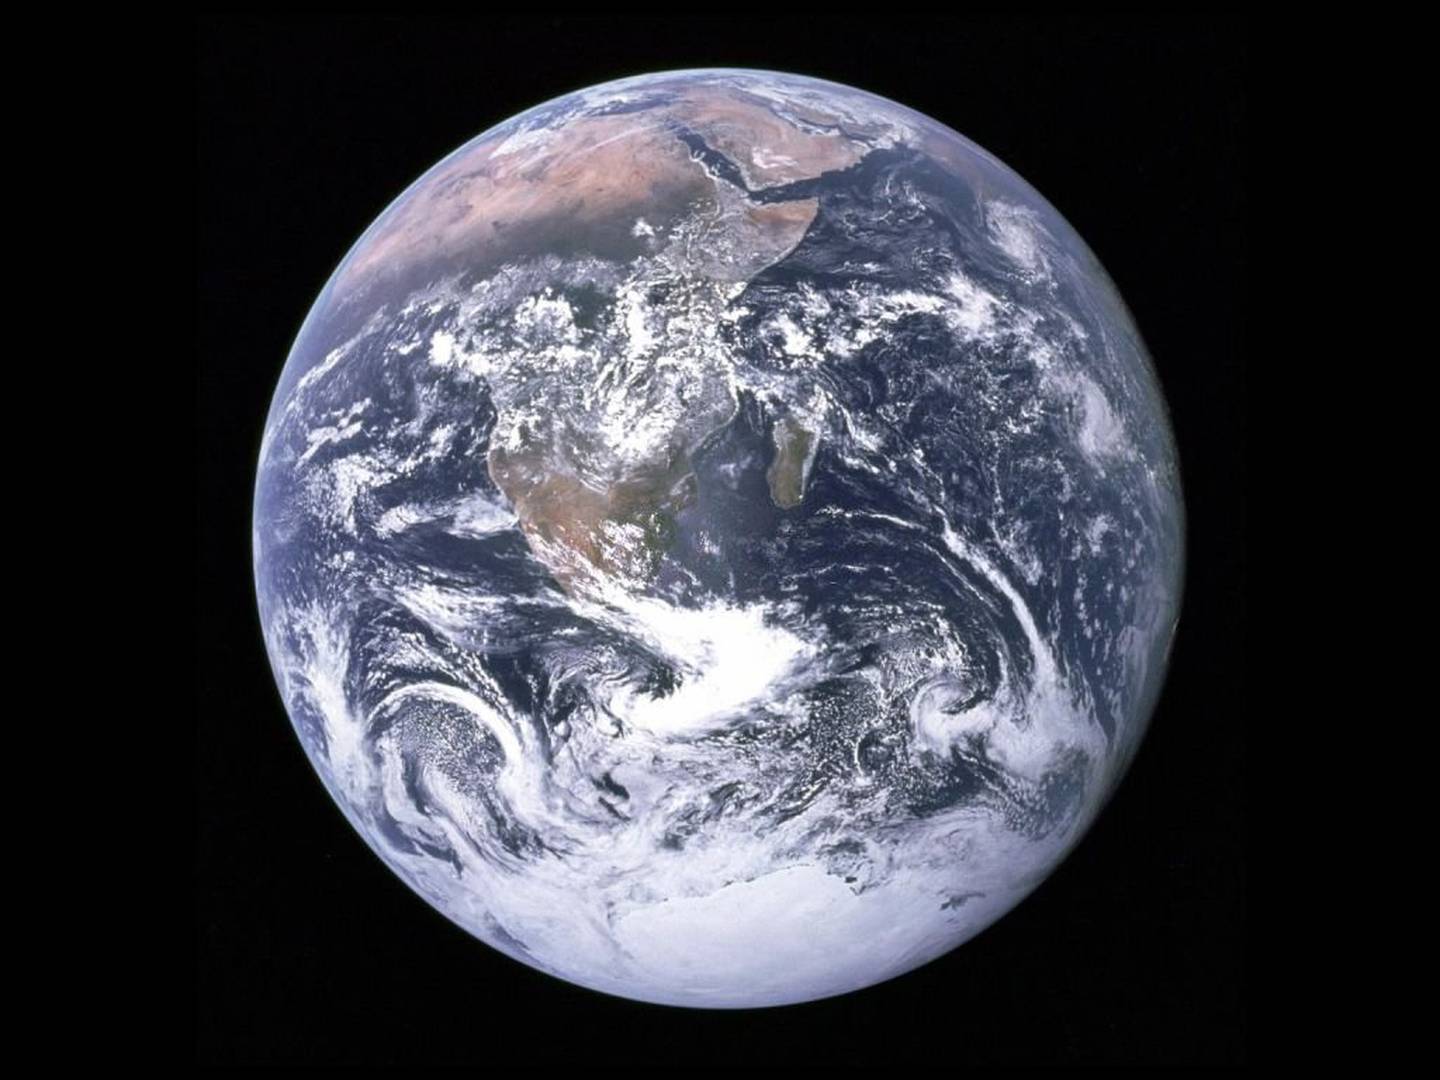 Foto de la Tierra, tomada por Jack Schmitt en Apolo 17